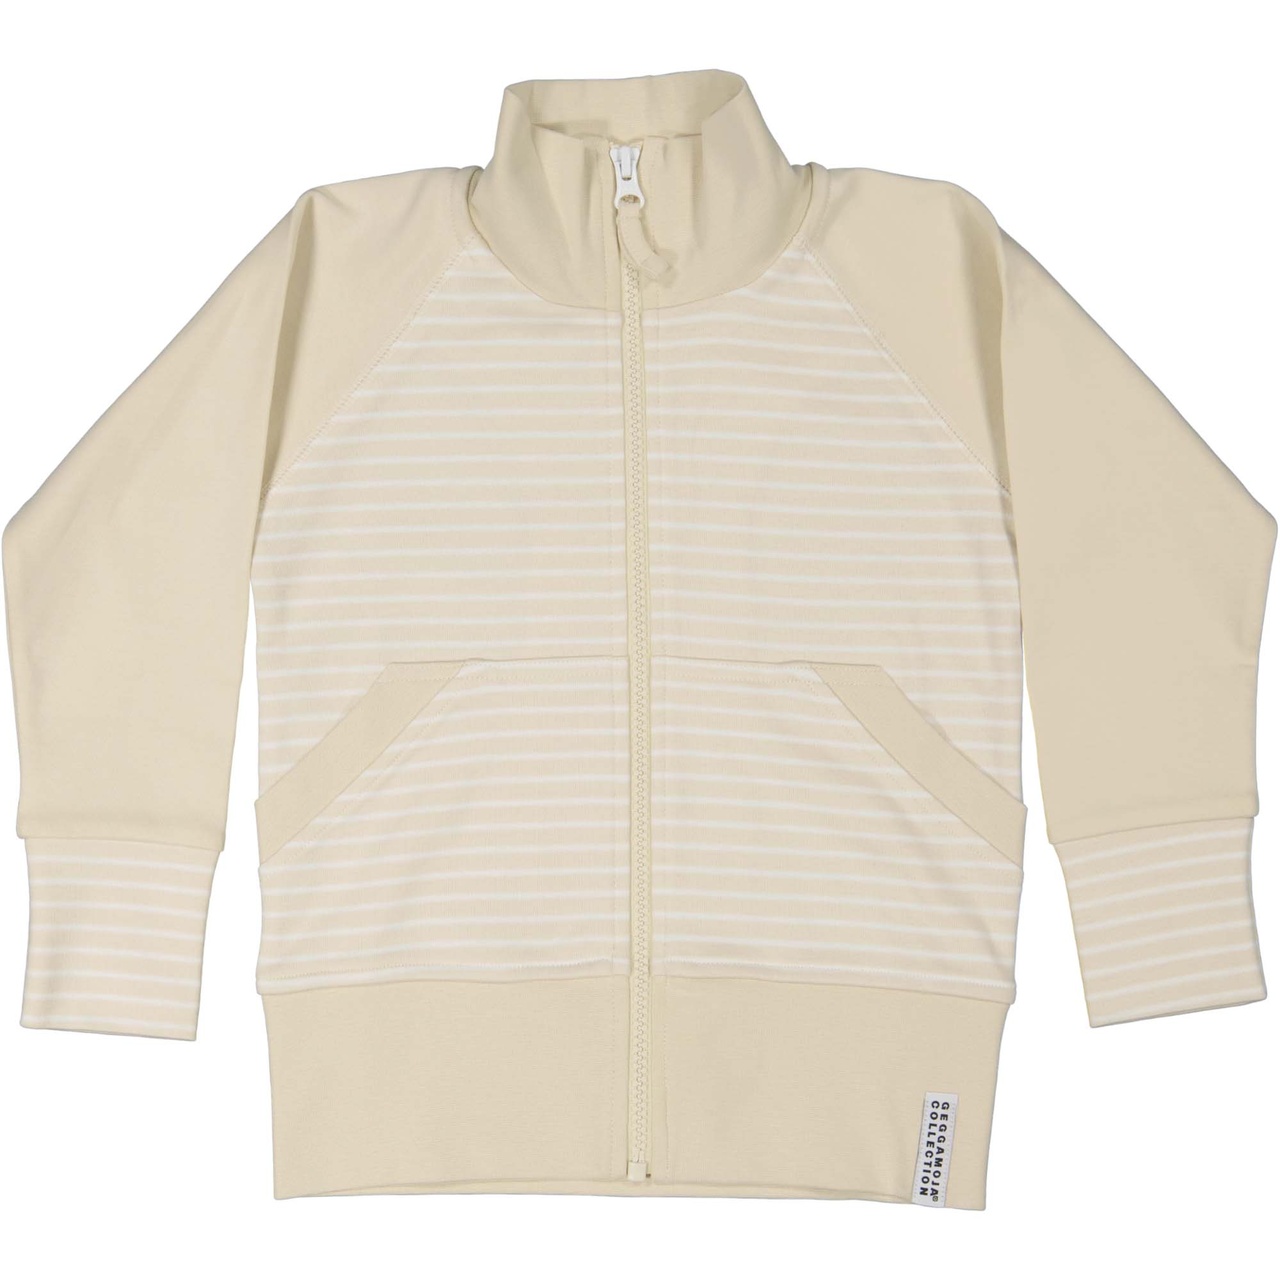 Zip sweater Beige/white 86/92